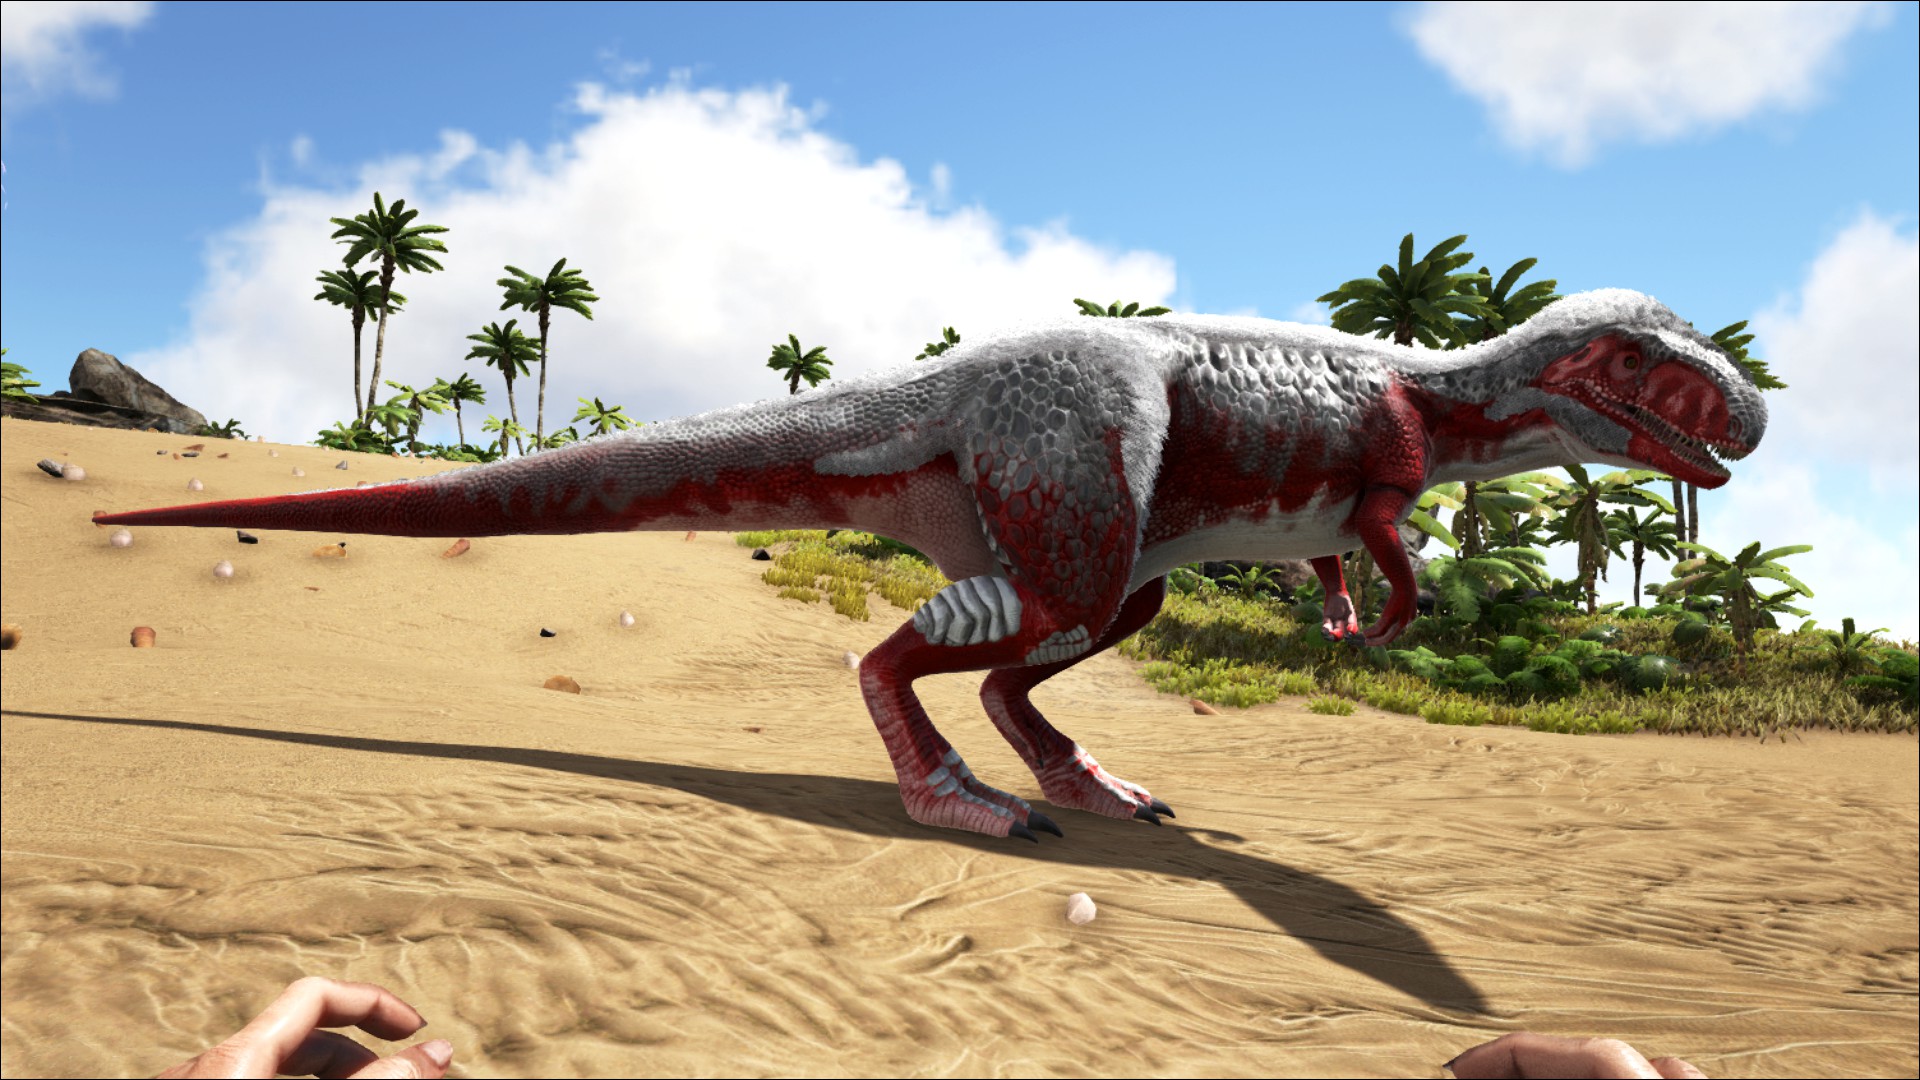 メガロサウルス 公式ark Survival Evolvedウィキ